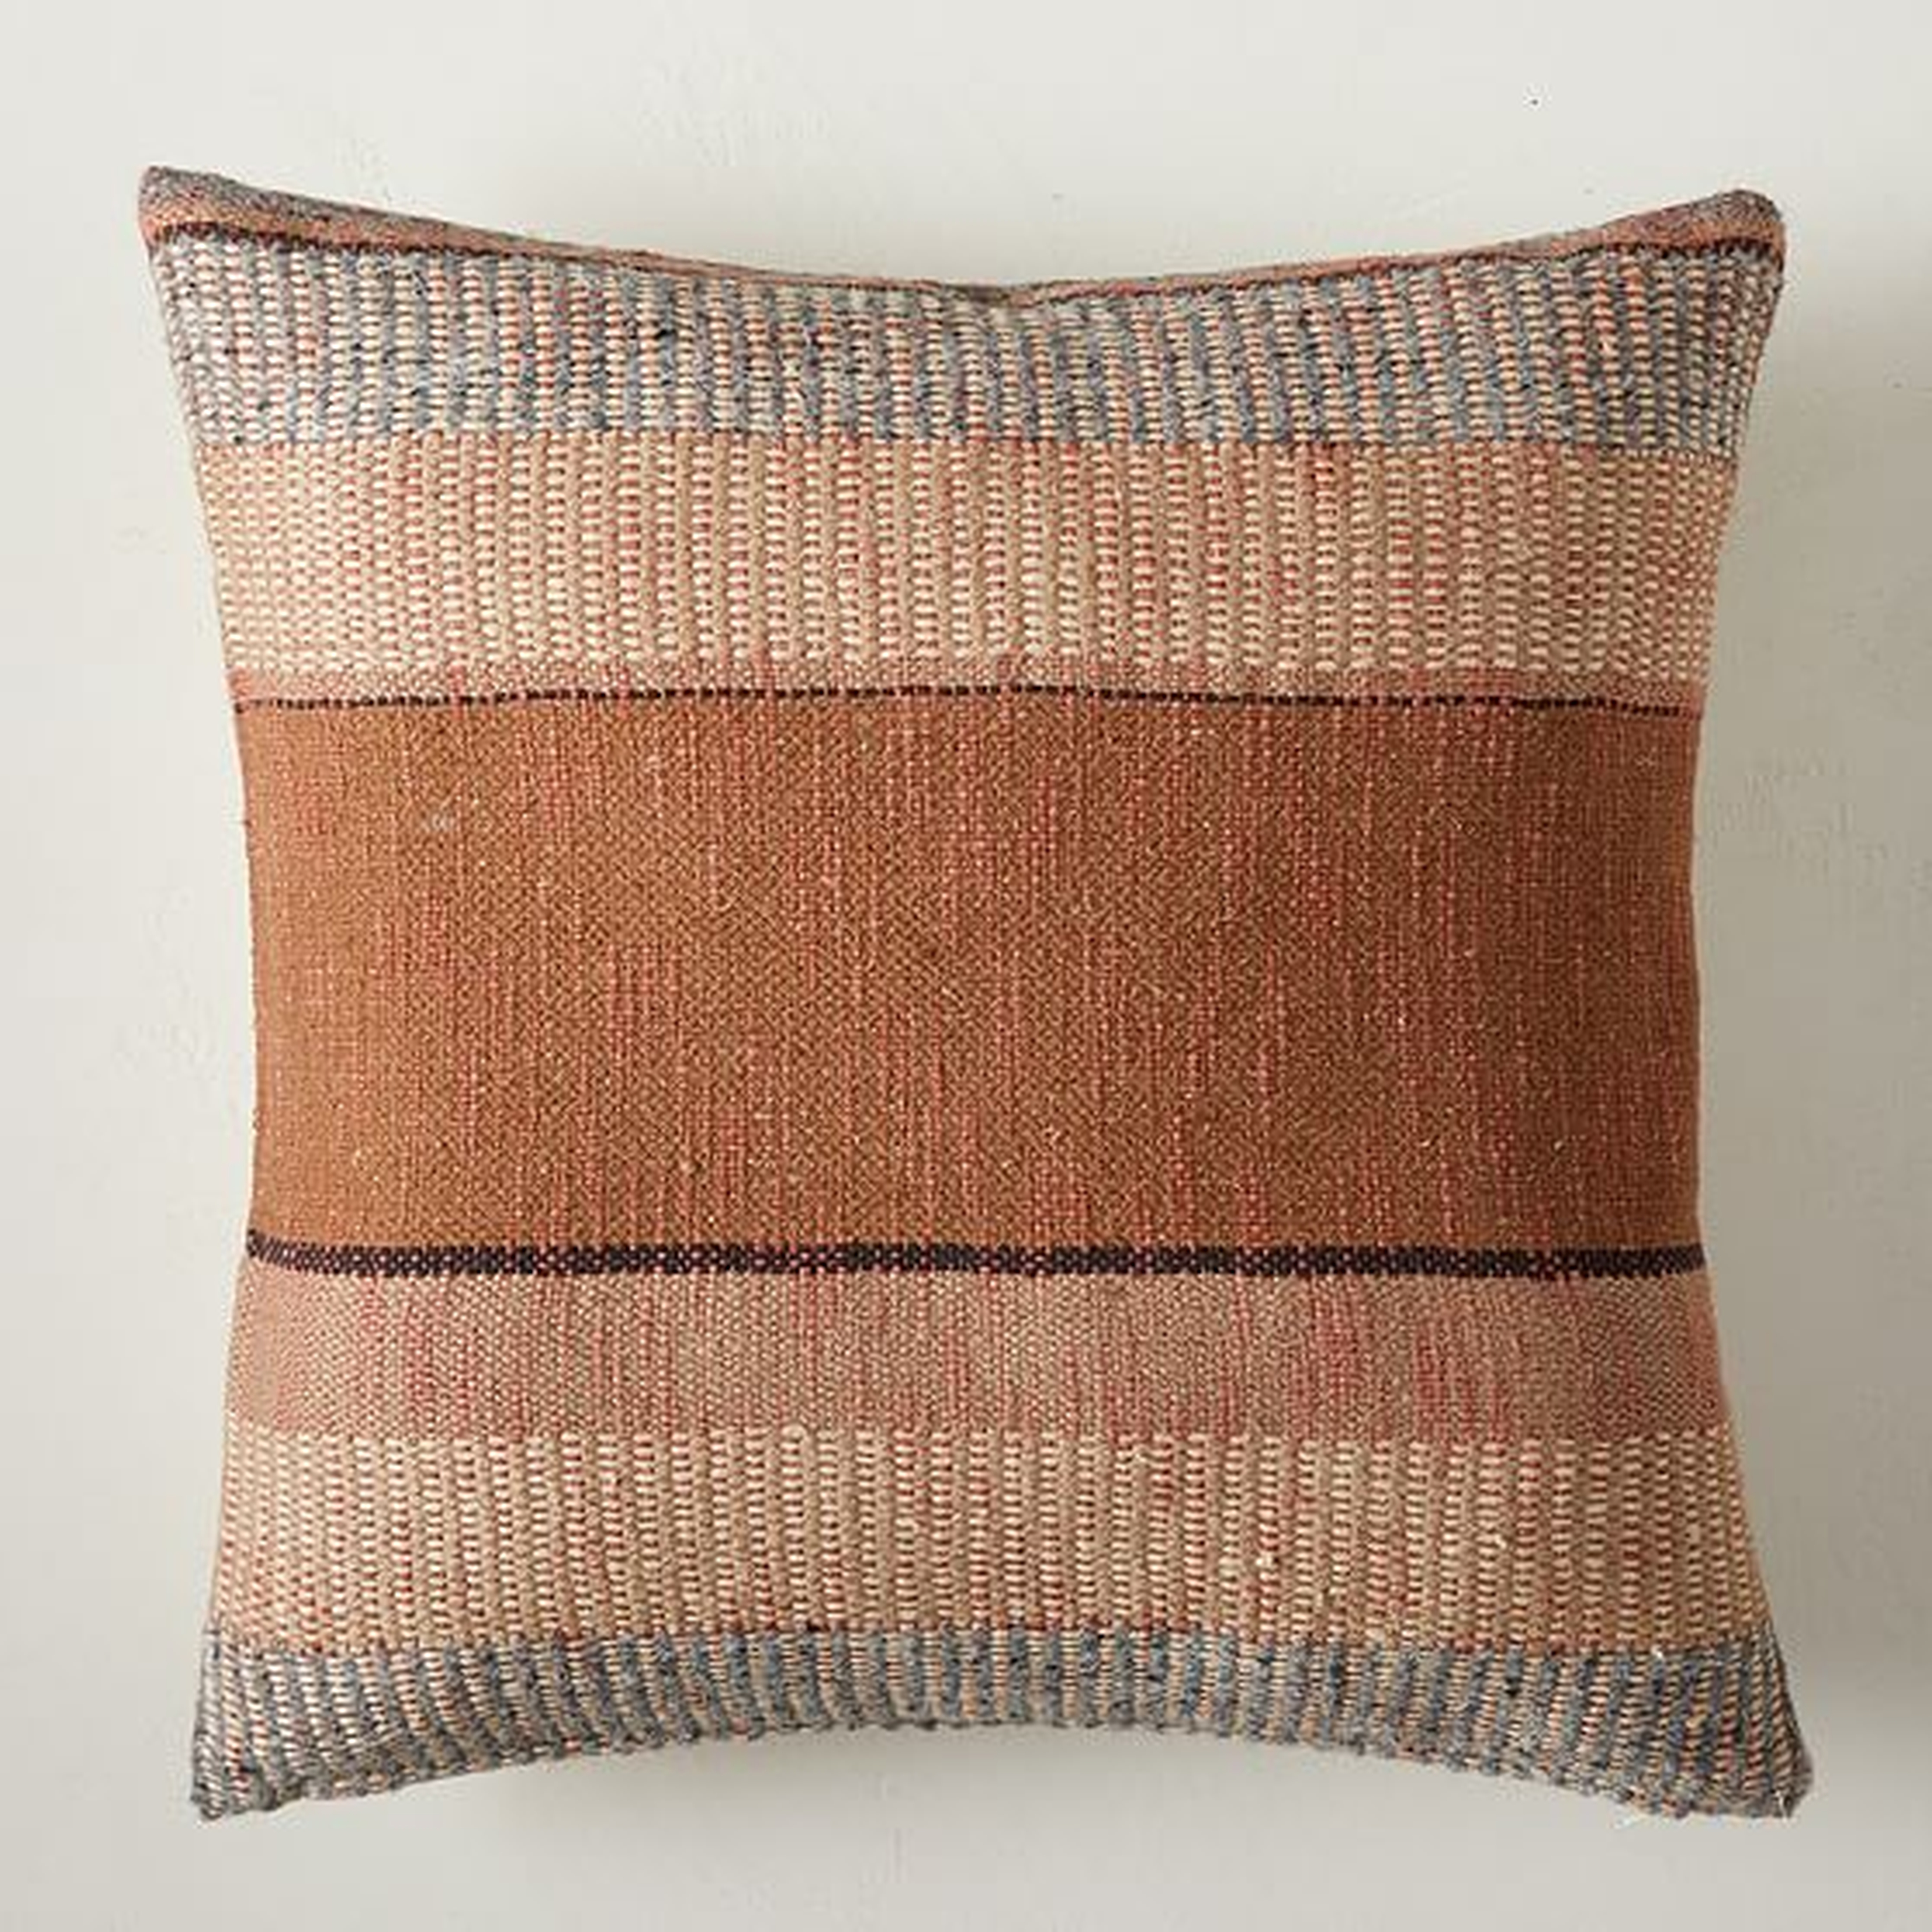 Bold Center Mixed Stripe Pillow Cover, 20"x20", Terracotta - West Elm